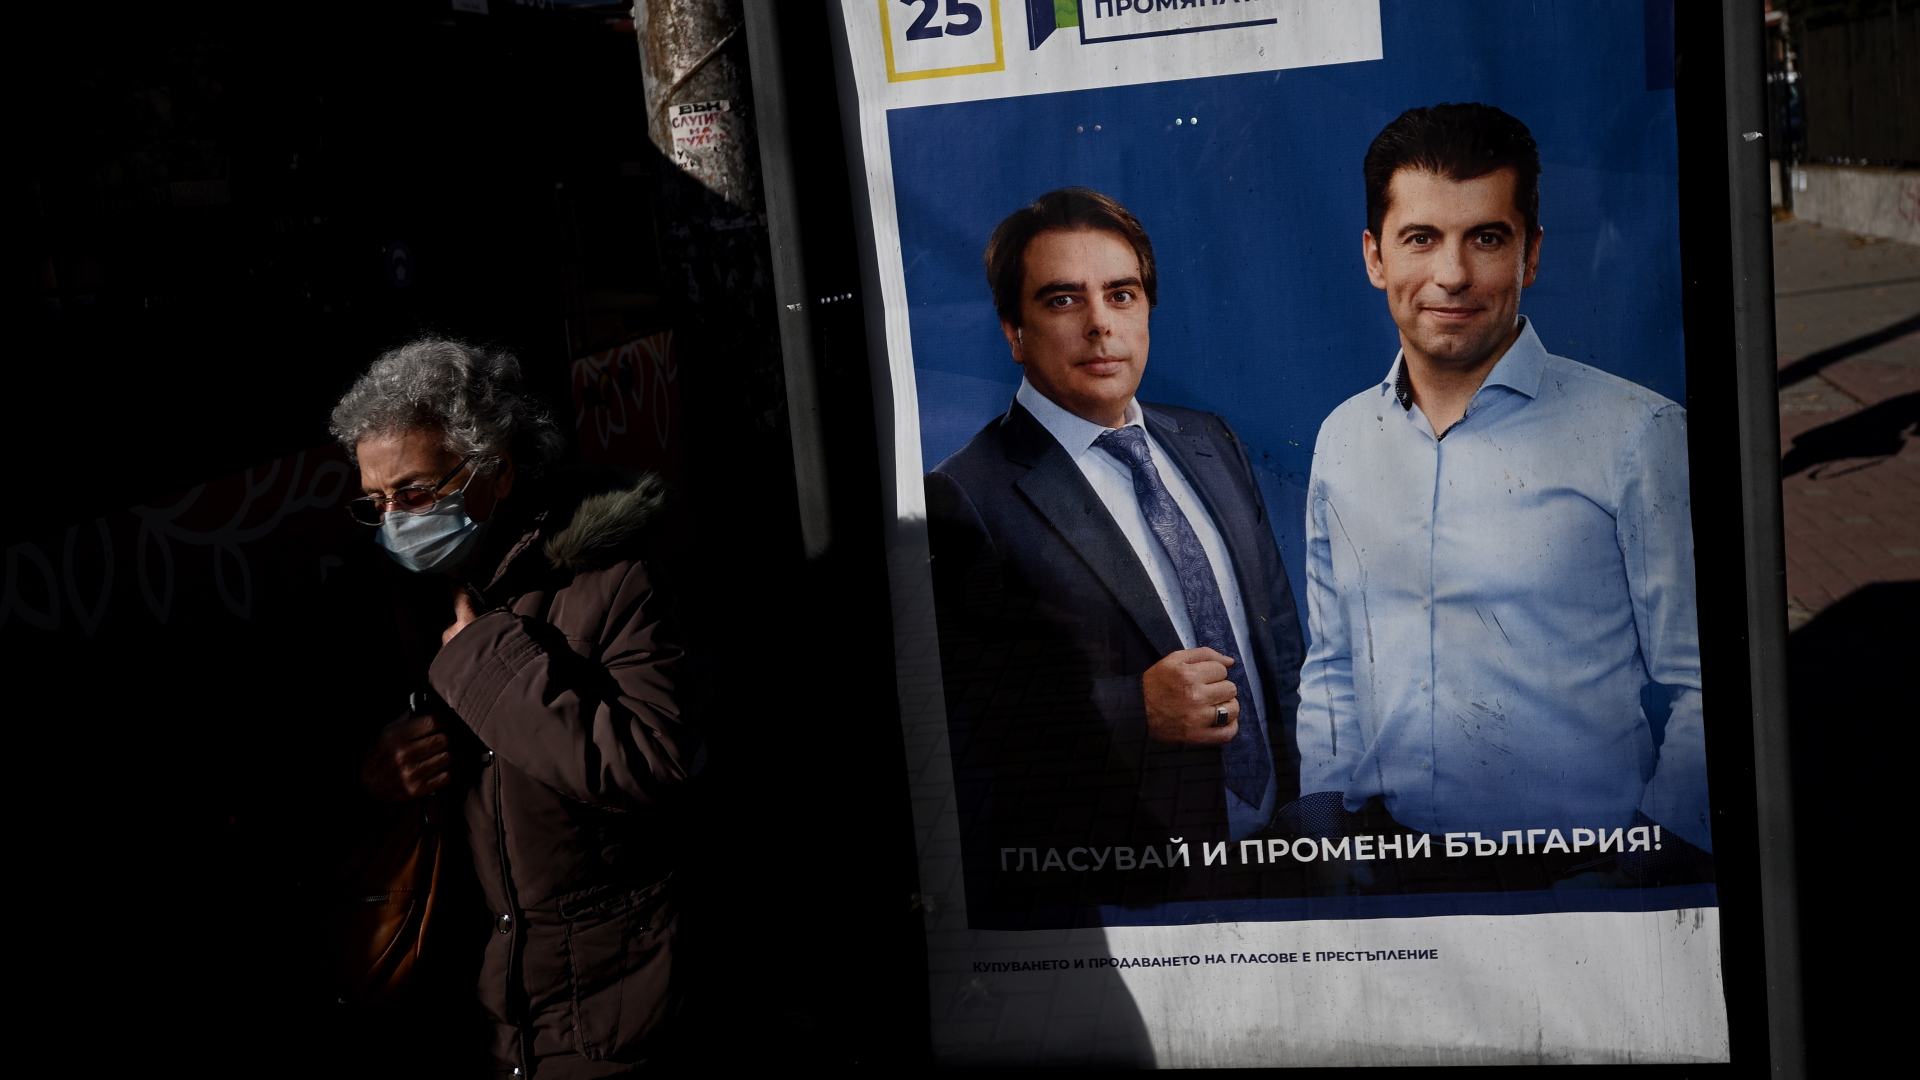 Eine Frau läuft an einem Wahlplakat der Partei "Wir setzen den Wandel fort" vorbei, auf dem die Spitzenkandidaten Kiril Petkow (rechts) und Assen Wassilew (links) zu sehen sind. | EPA